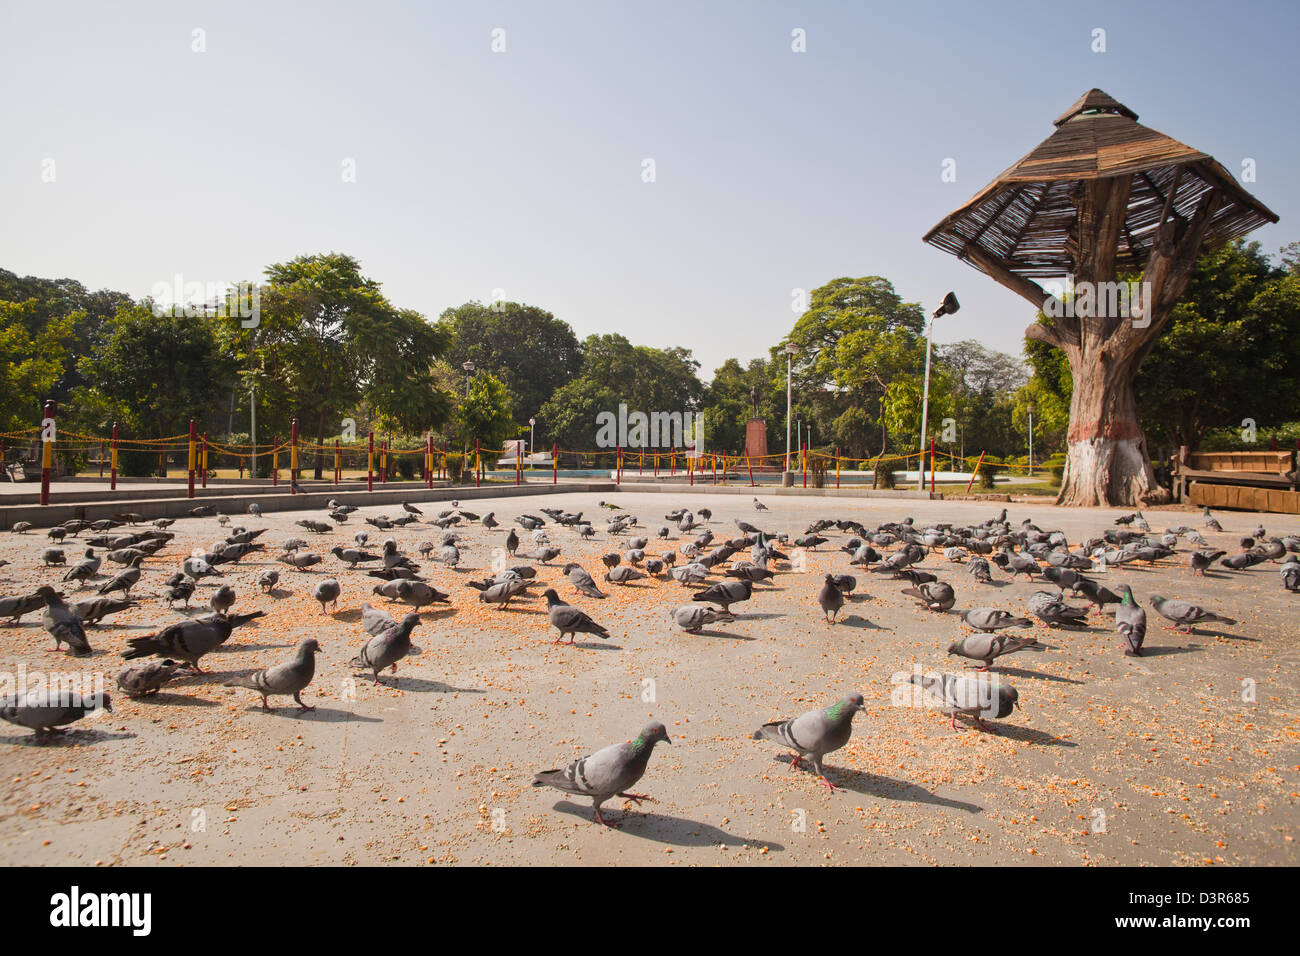 Troupeau de pigeons céréales d'alimentation dans un jardin, point de vue de Maharaja Ranjit Singh, Lawrence Road, Amritsar, Punjab, India Banque D'Images